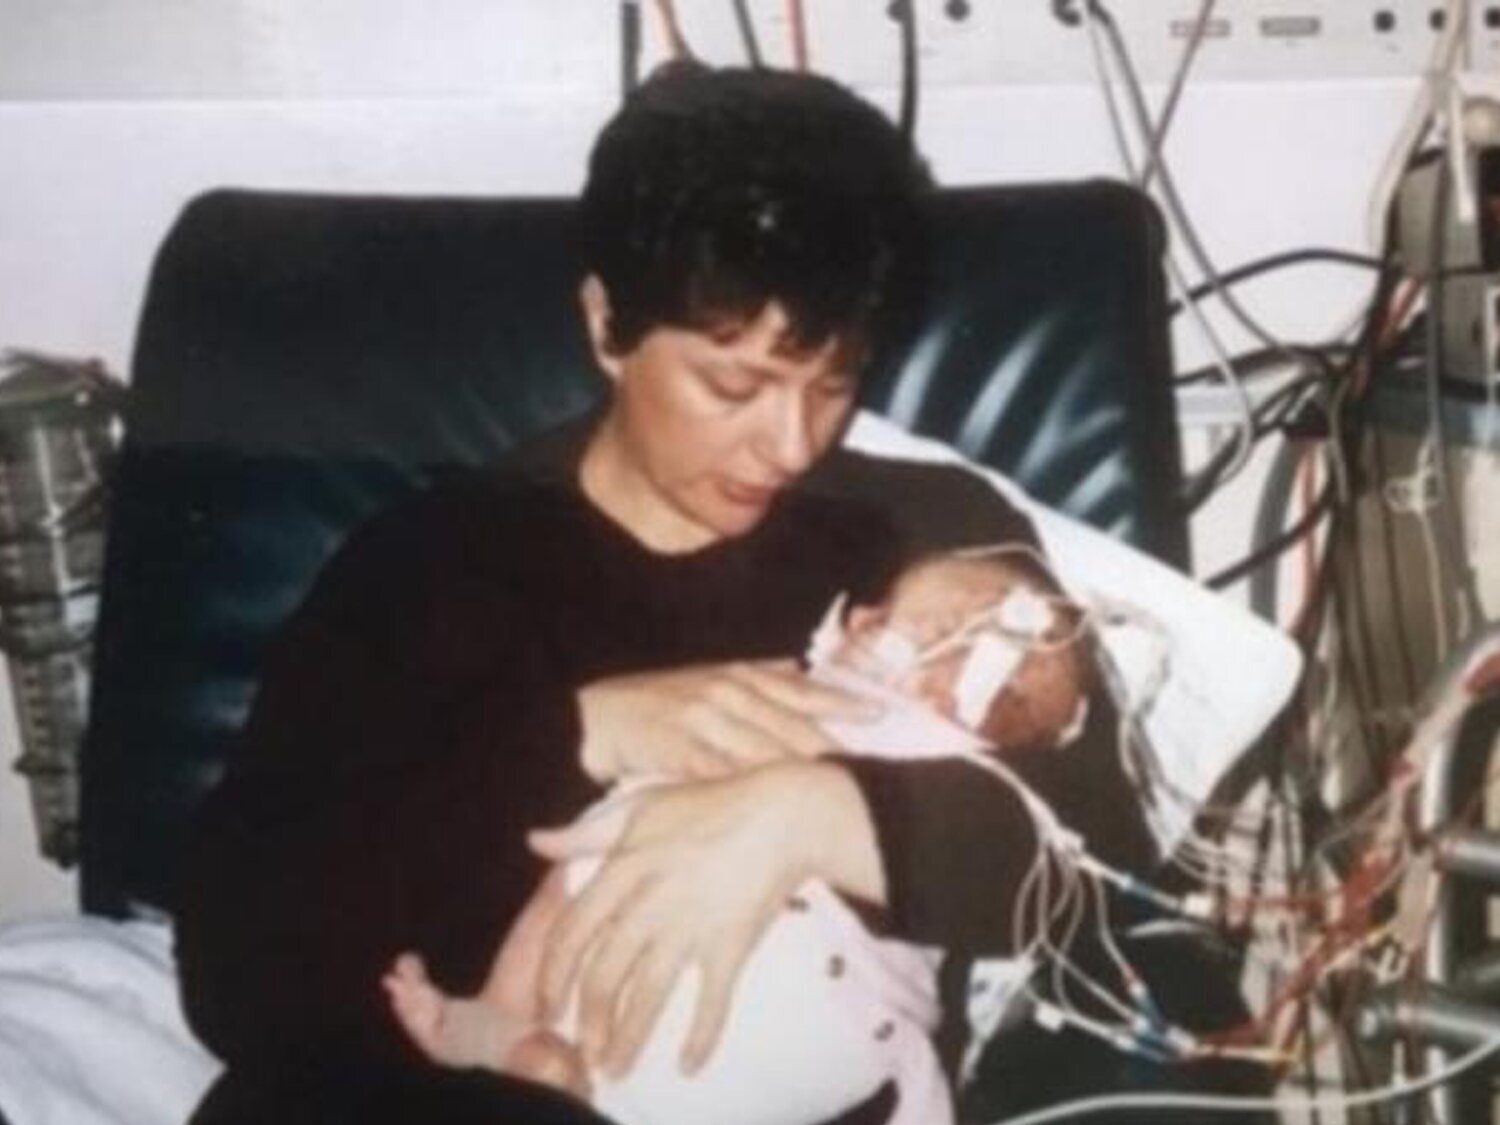 Tras 20 años en prisión, Australia indulta a la madre condenada por matar a sus cuatro hijos